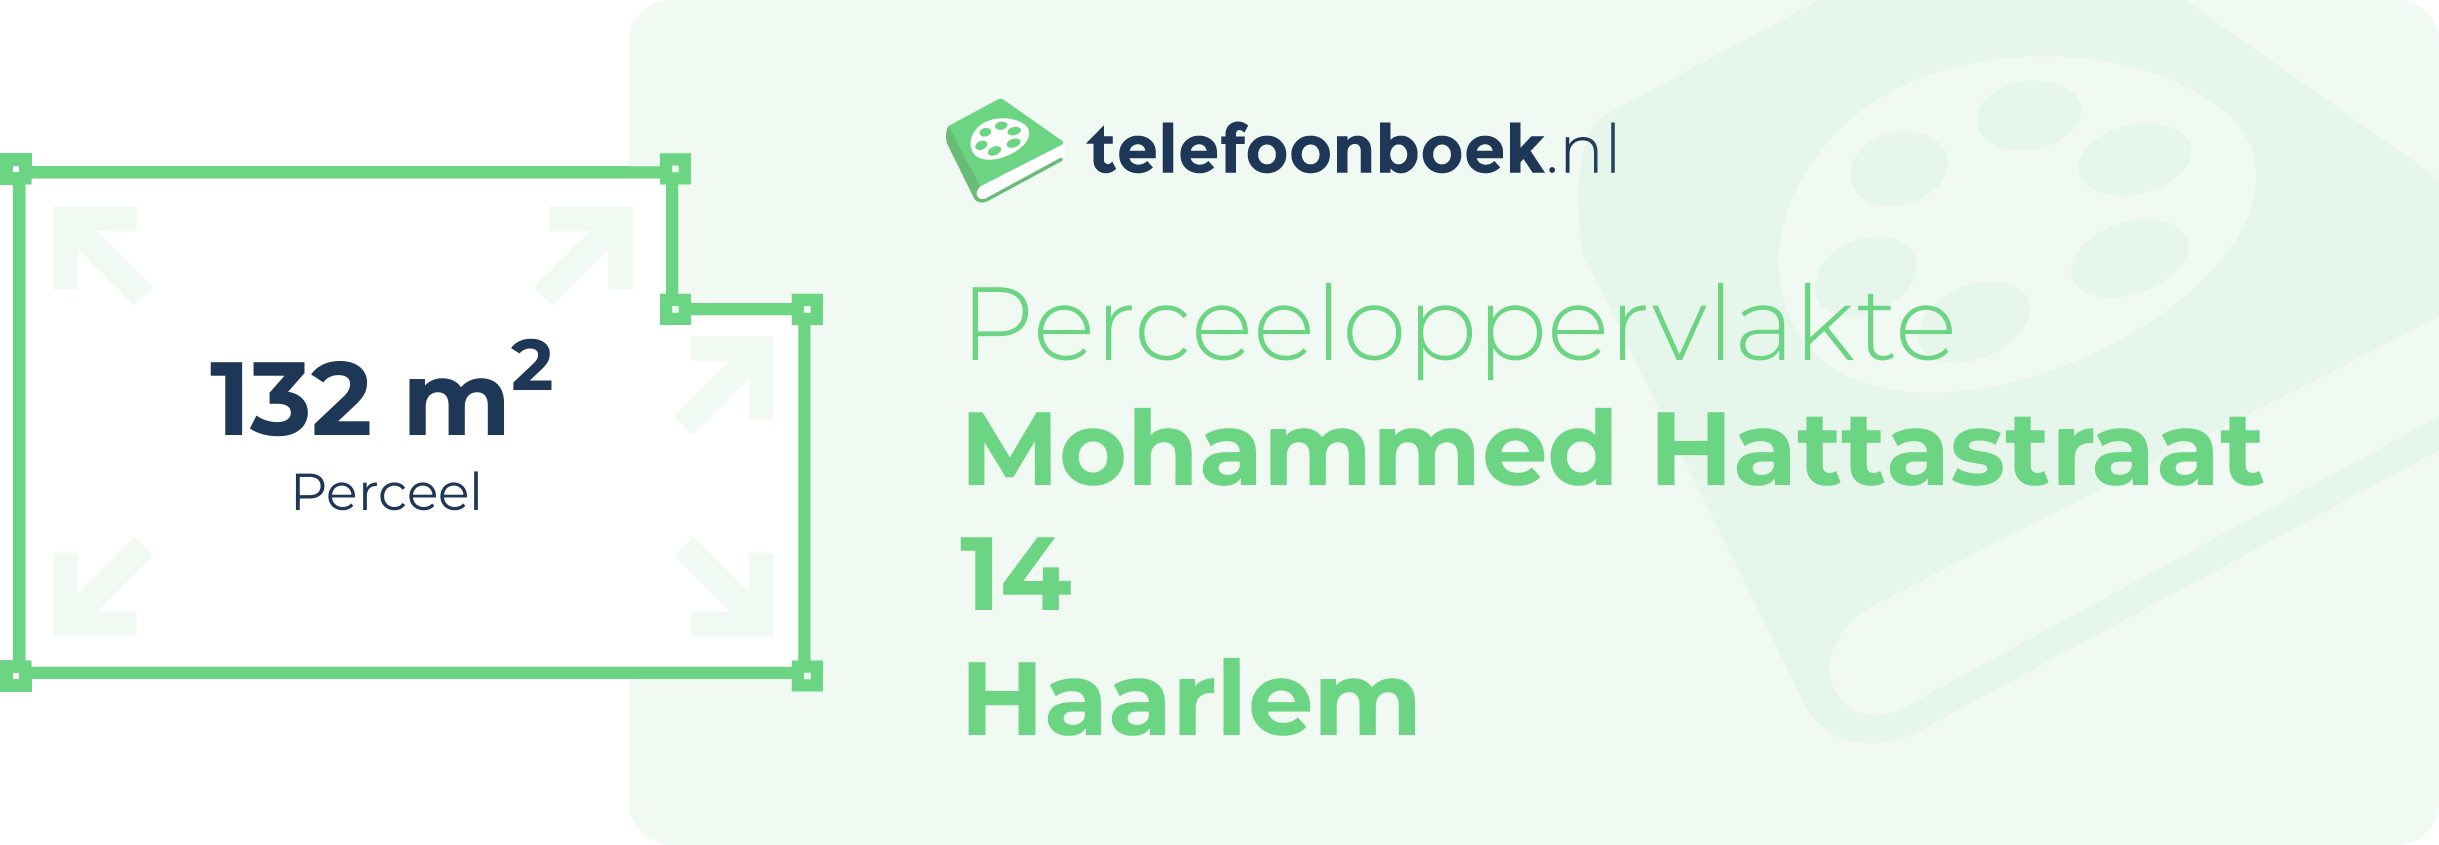 Perceeloppervlakte Mohammed Hattastraat 14 Haarlem